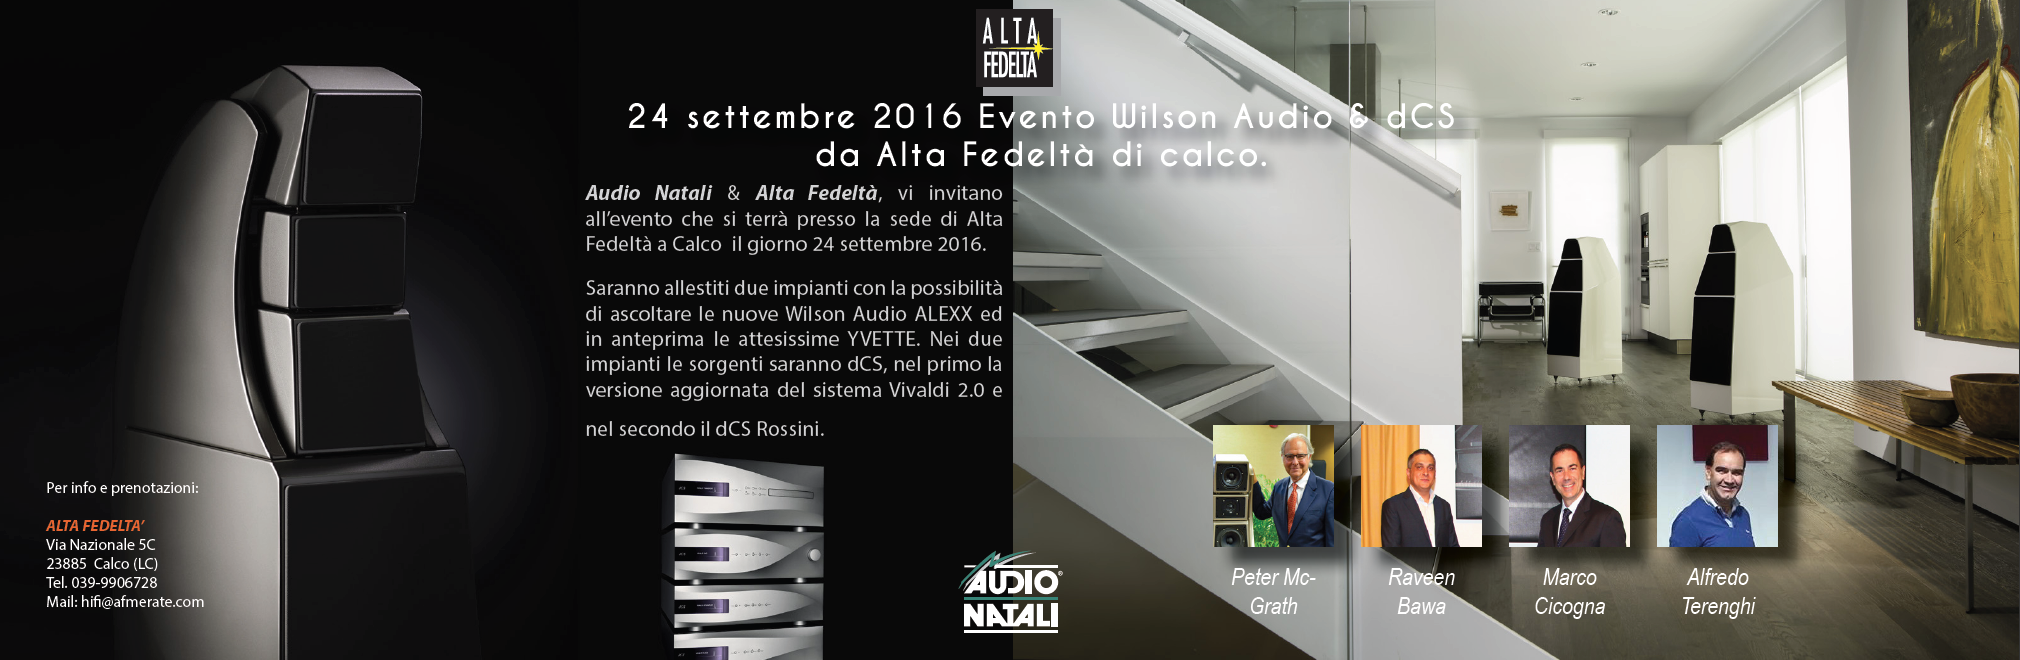 news AudioNatali - Prenotazione evento Wilson Audio & dCS del 24 Settembre.